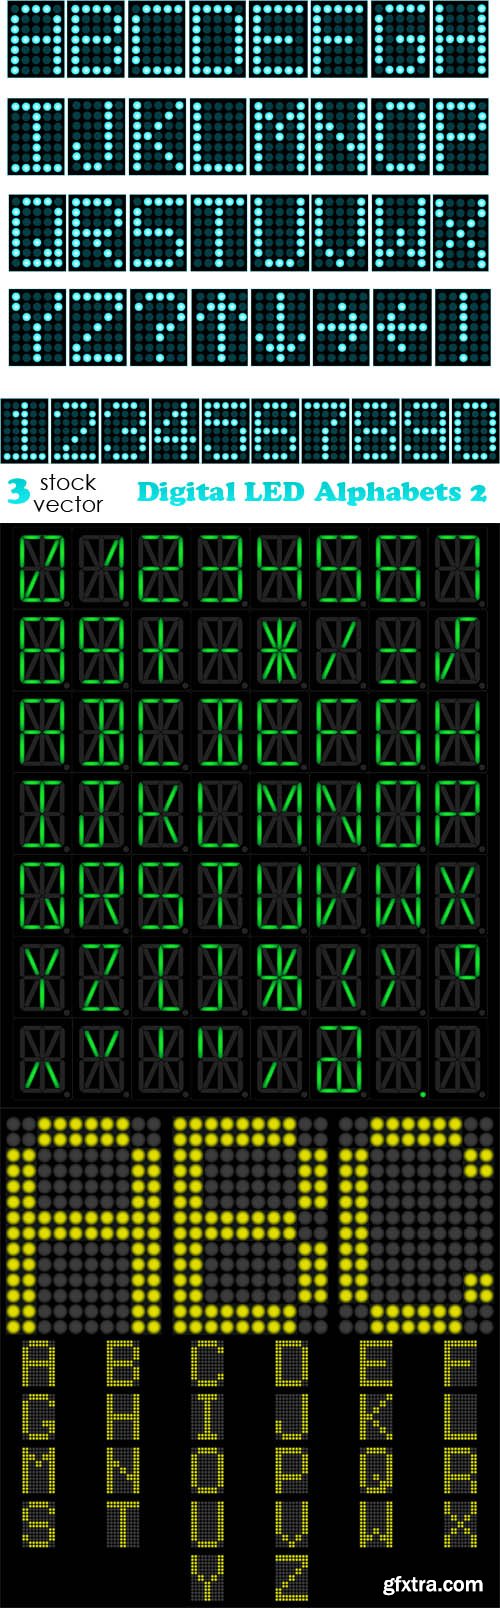 Vectors - Digital LED Alphabets 2